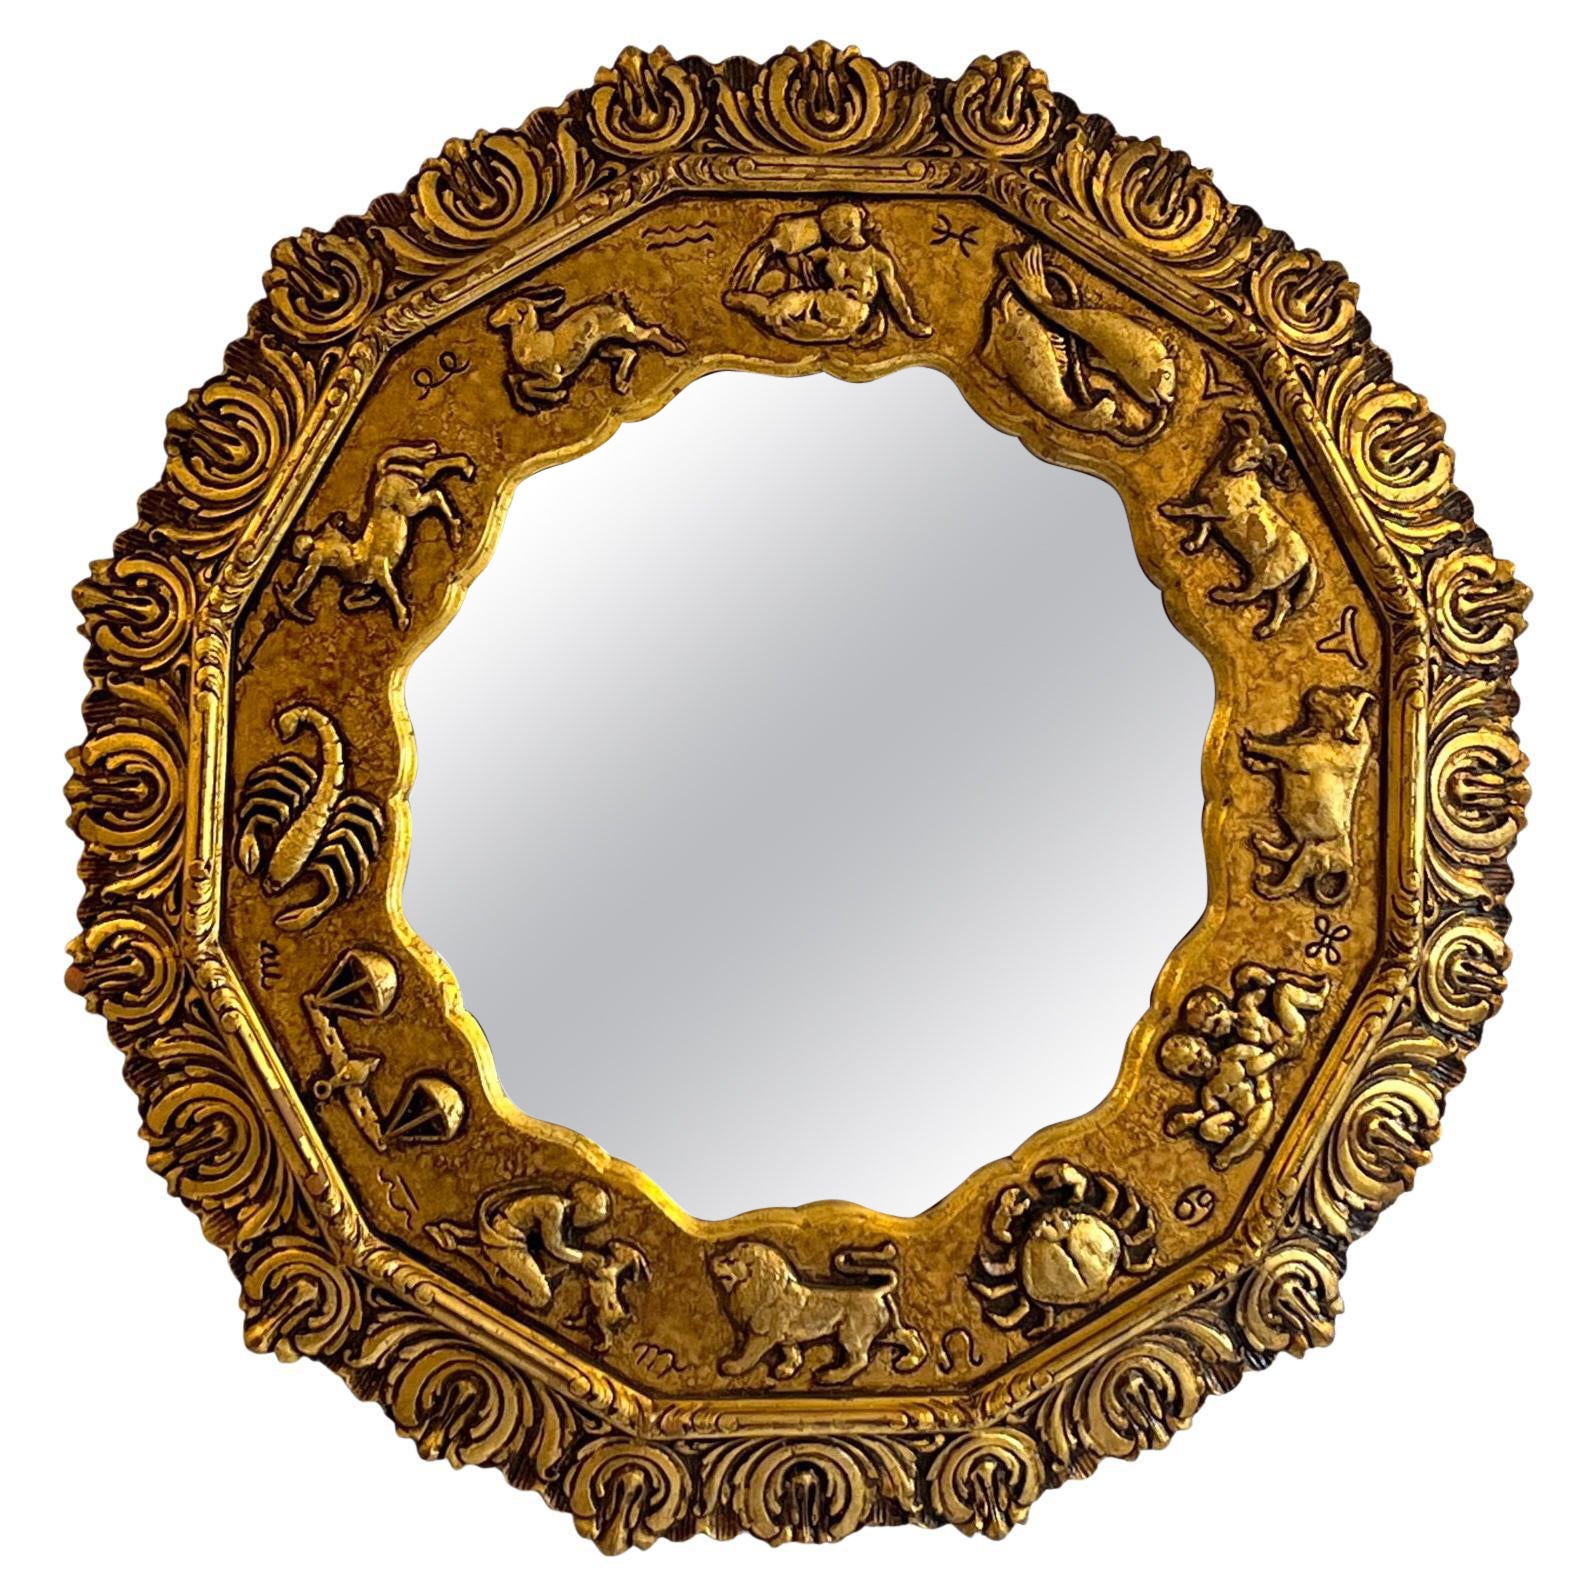 Vergoldeter Spiegel mit Tierkreis-Motiv